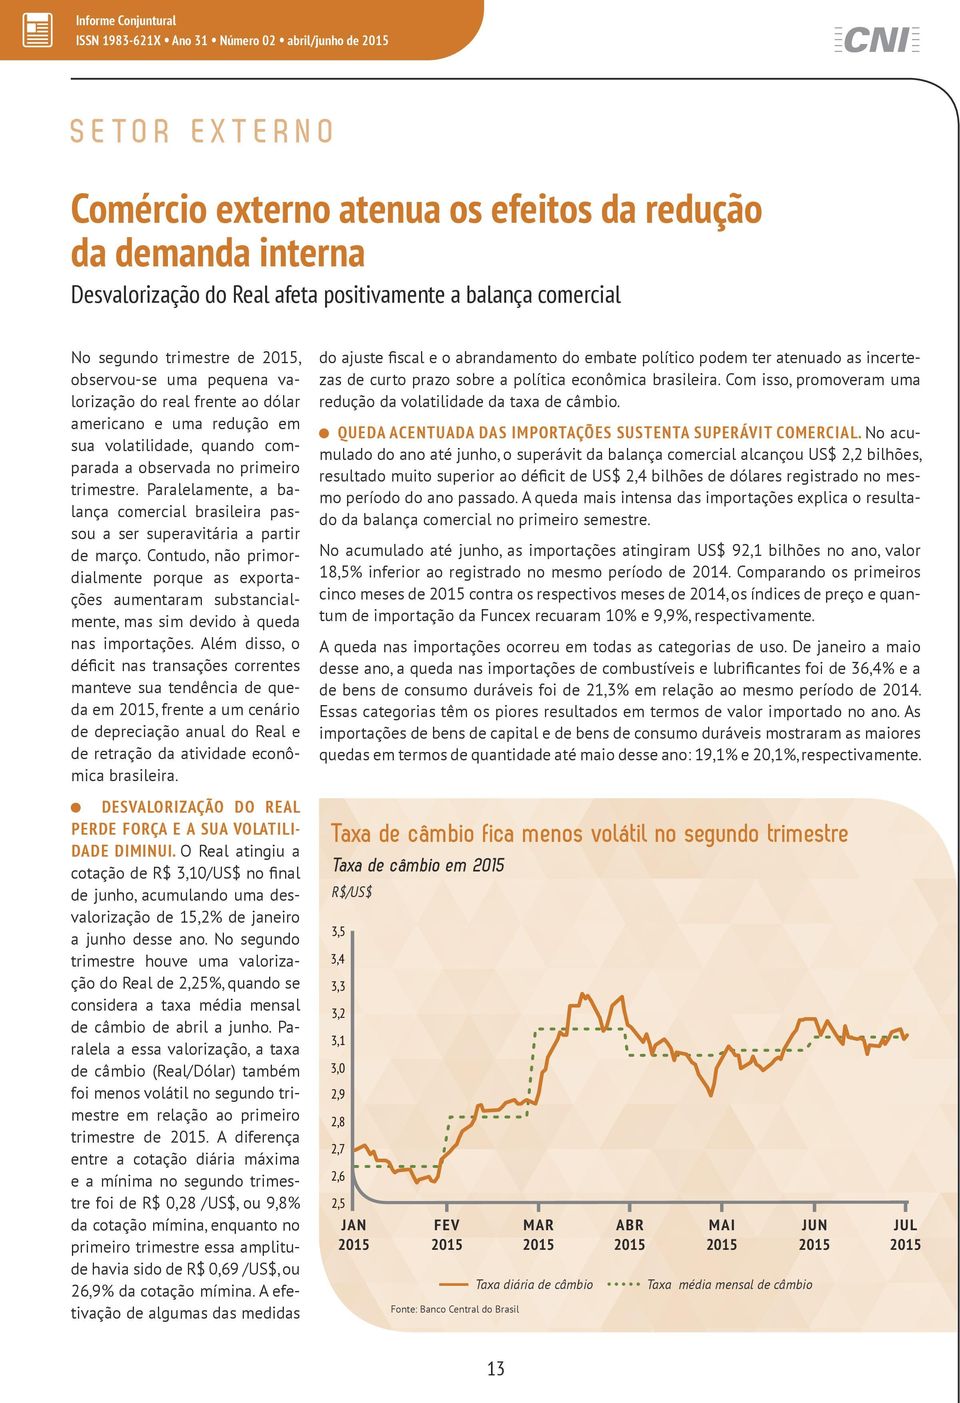 Paralelamente, a balança comercial brasileira passou a ser superavitária a partir de março.